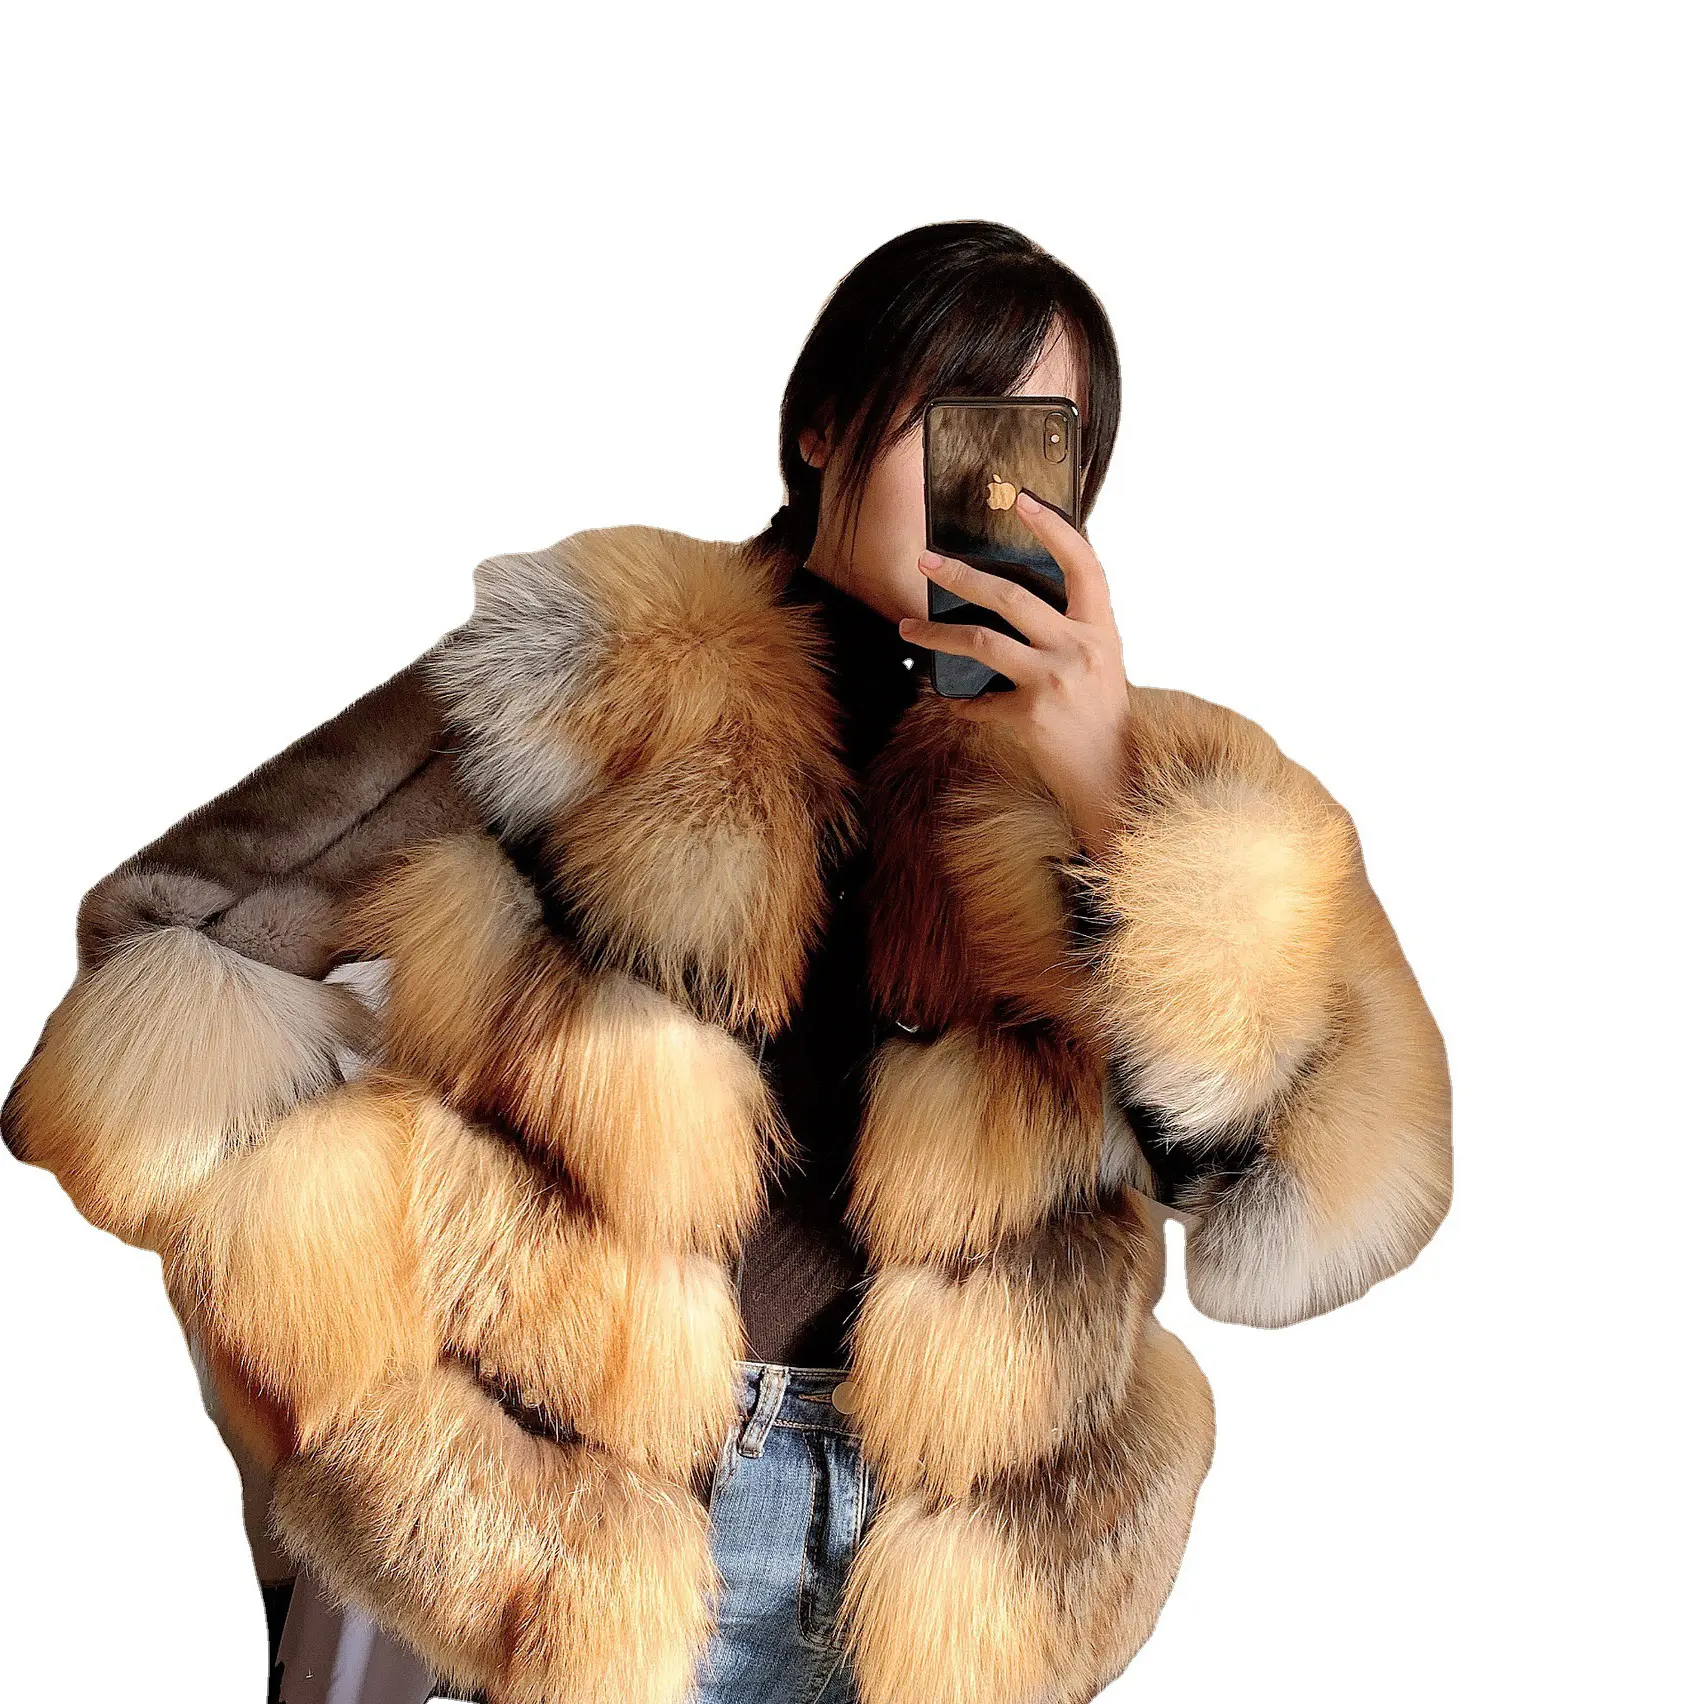 Jtfur 2020 Nuovo di stile di inverno della pelliccia del visone del rivestimento del cappotto di trasporto delle signore calde elegante pelliccia di volpe delle donne del cappotto